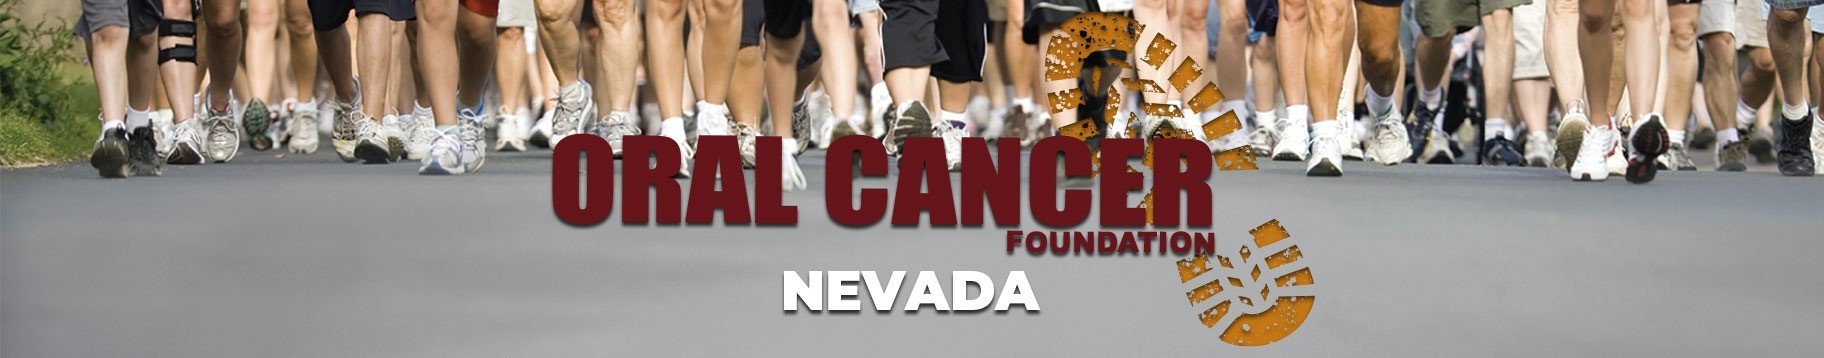 Nevada Oral Cancer Walk